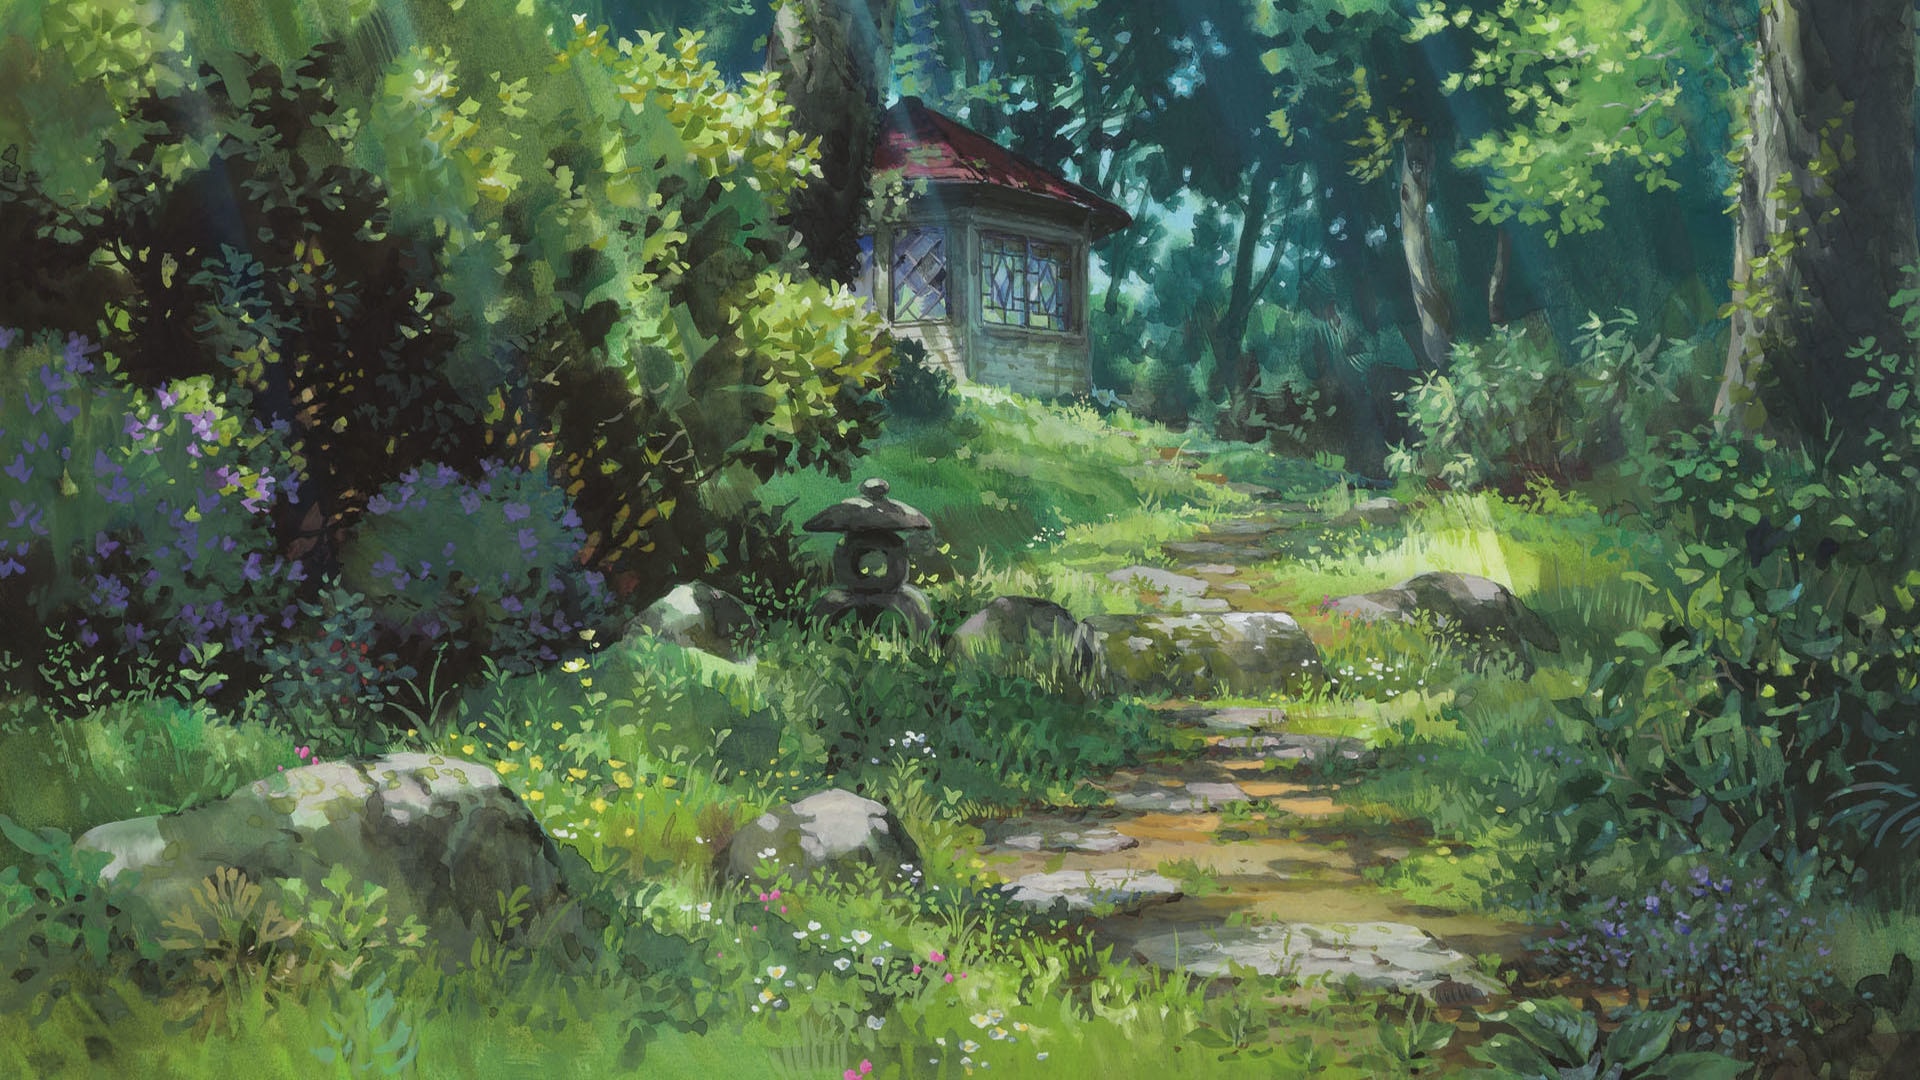 Bộ sưu tập hình nền Studio Ghibli có thể khiến bạn cảm thấy ngỡ ngàng và thích thú với vẻ đẹp tinh tế từ các bức tranh tuyệt đẹp. Hãy chiêm ngưỡng những bức ảnh đẹp và tìm kiếm niềm đam mê tràn đầy sáng tạo của bạn.